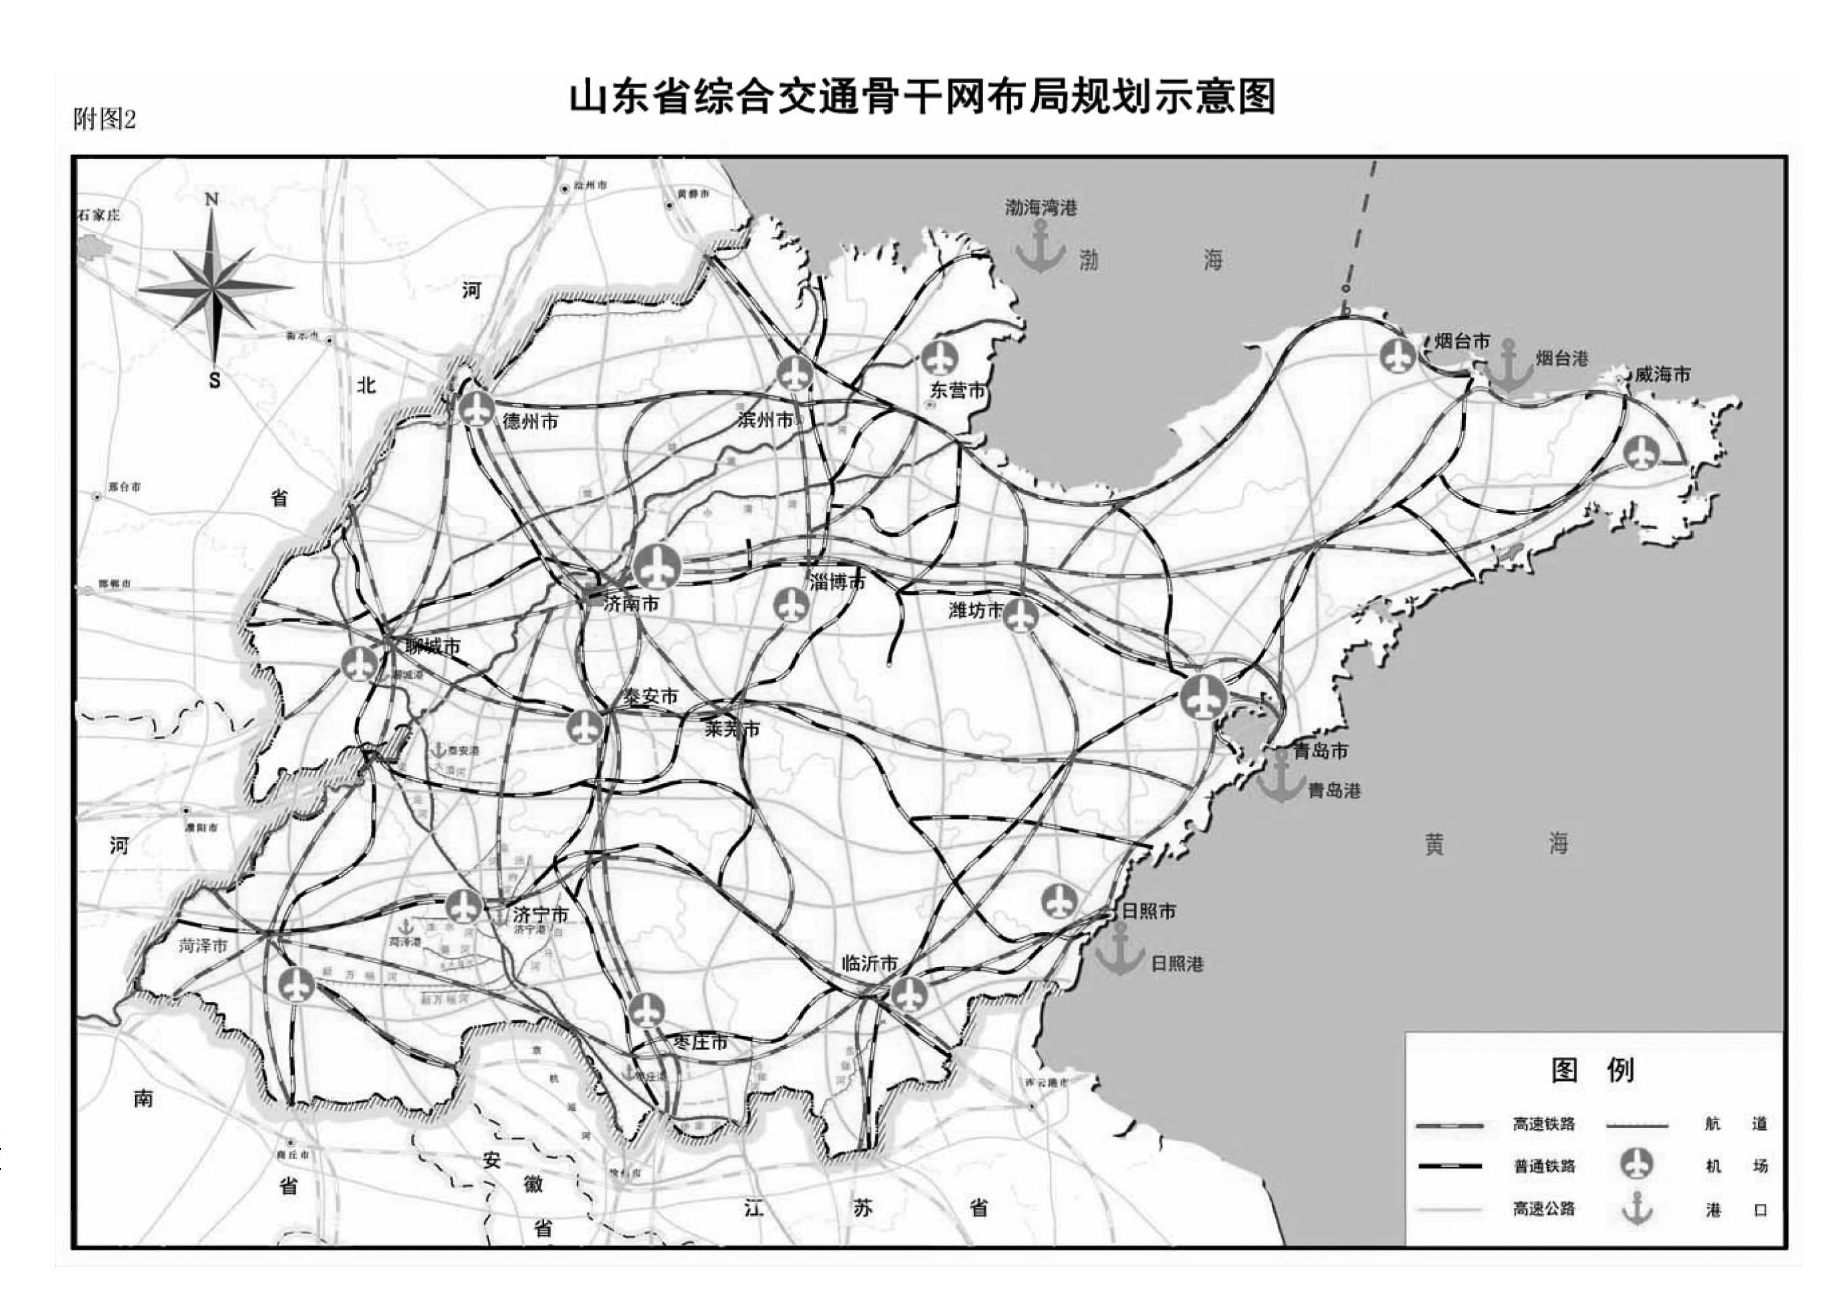 地理答啦:10幅高清大图,详解2018年至2035年山东省铁路网和公路网